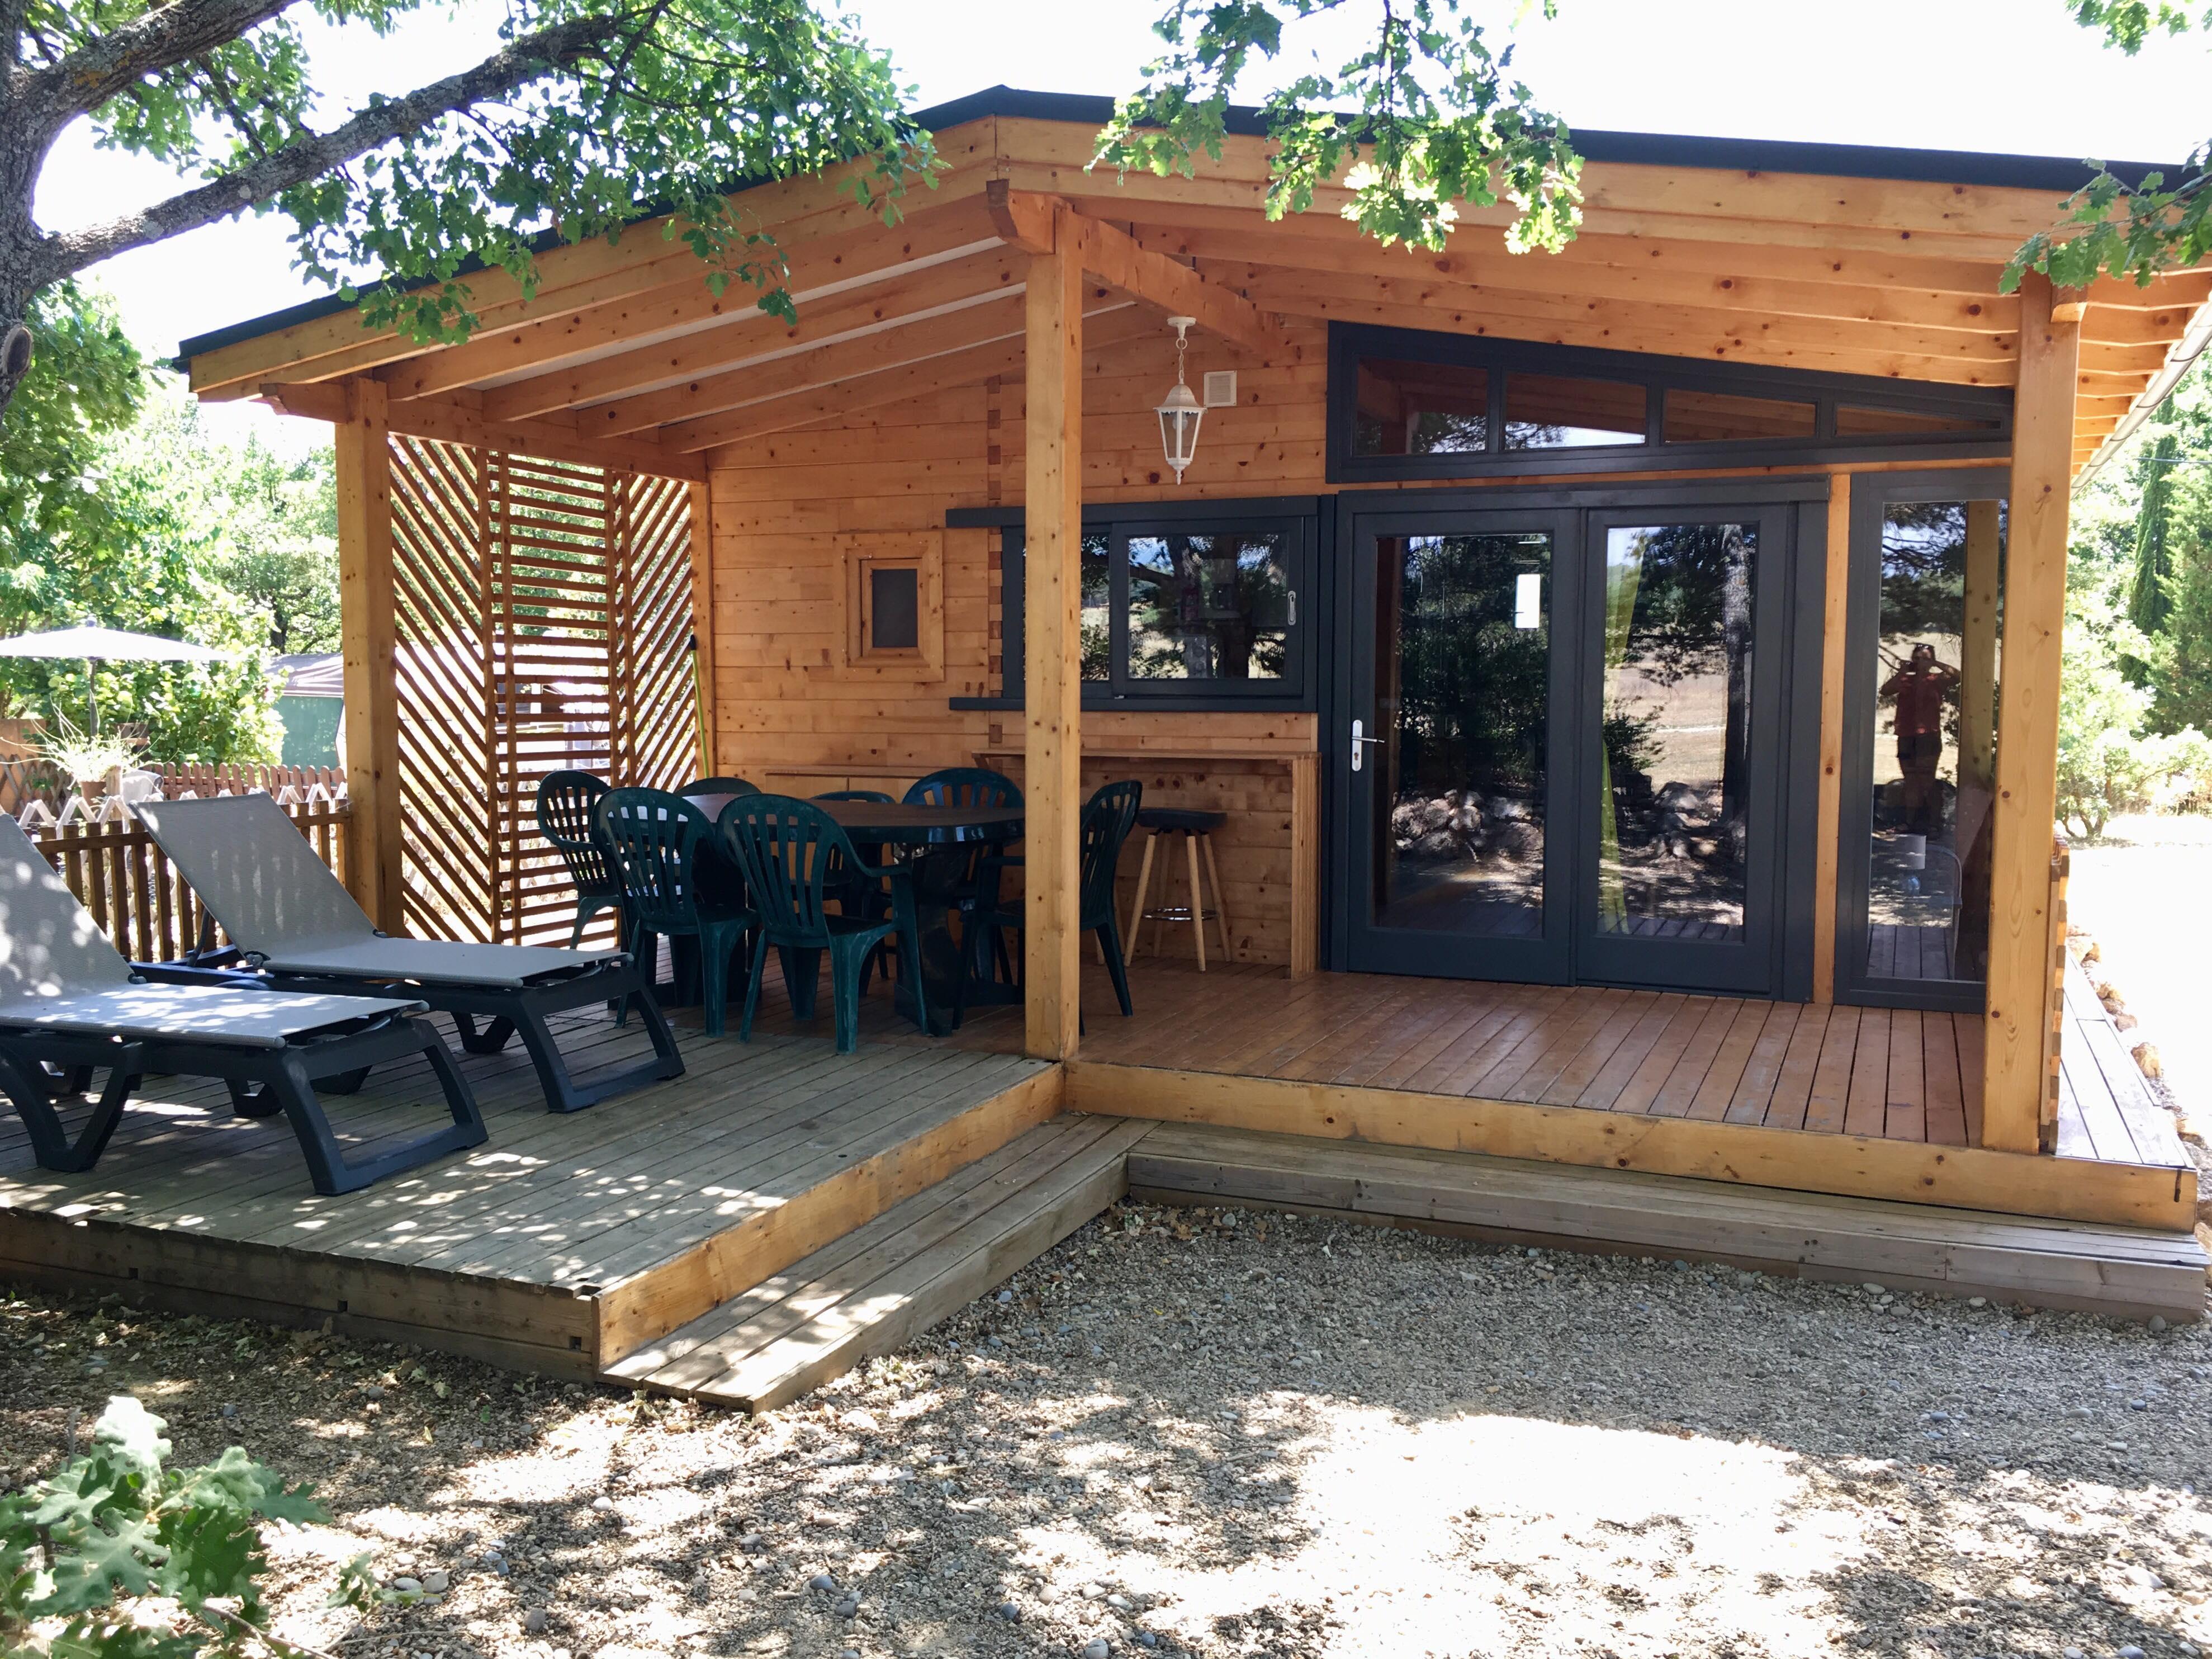 Location - Chalet 100% Bois Bioclimatique Nouveauté 2016 3 Chambres - Camping l'Avelanède